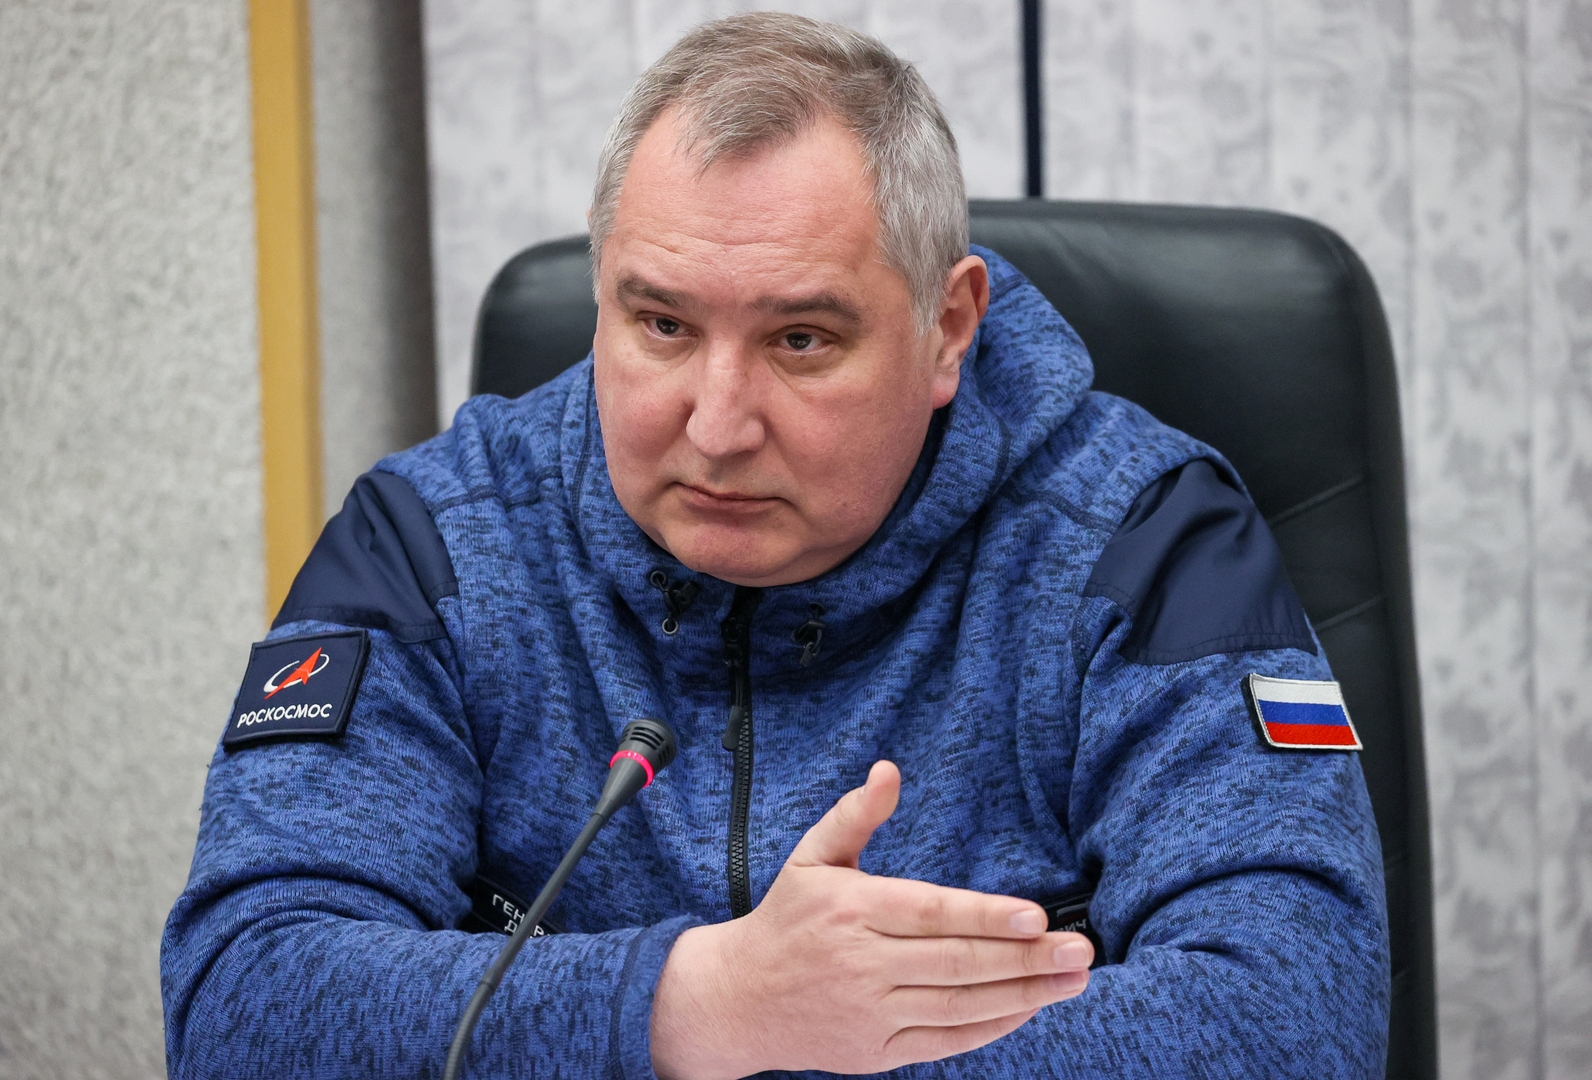 روغوزين: روسيا قد تعد رواد فضاء للقيام برحلات إلى القمر